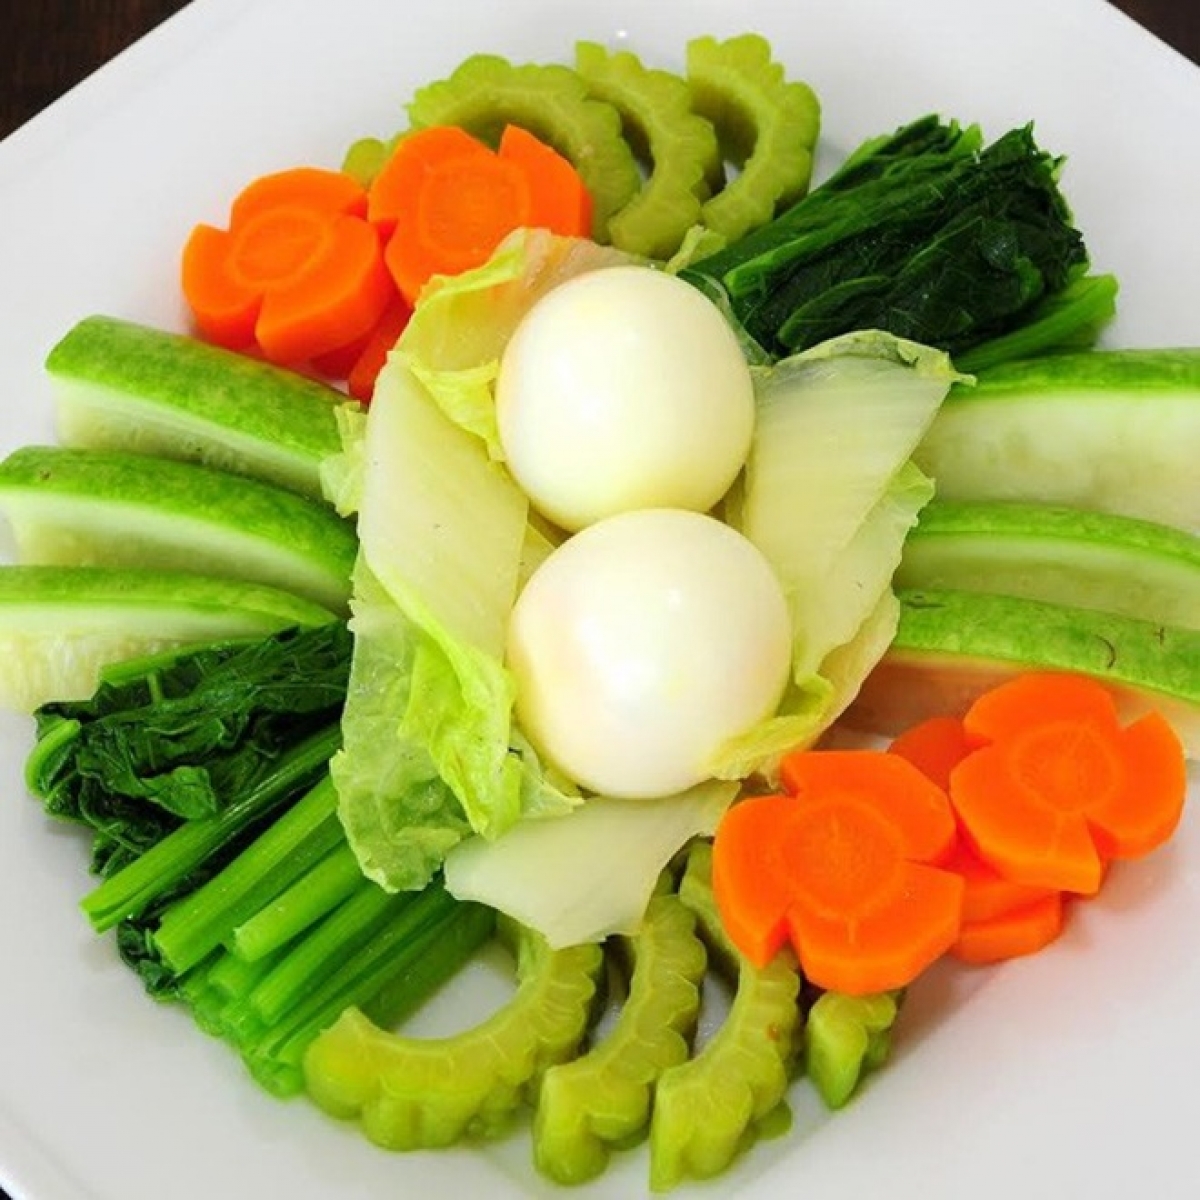 6 mẹo đơn giản để món rau luộc giữ màu xanh tươi